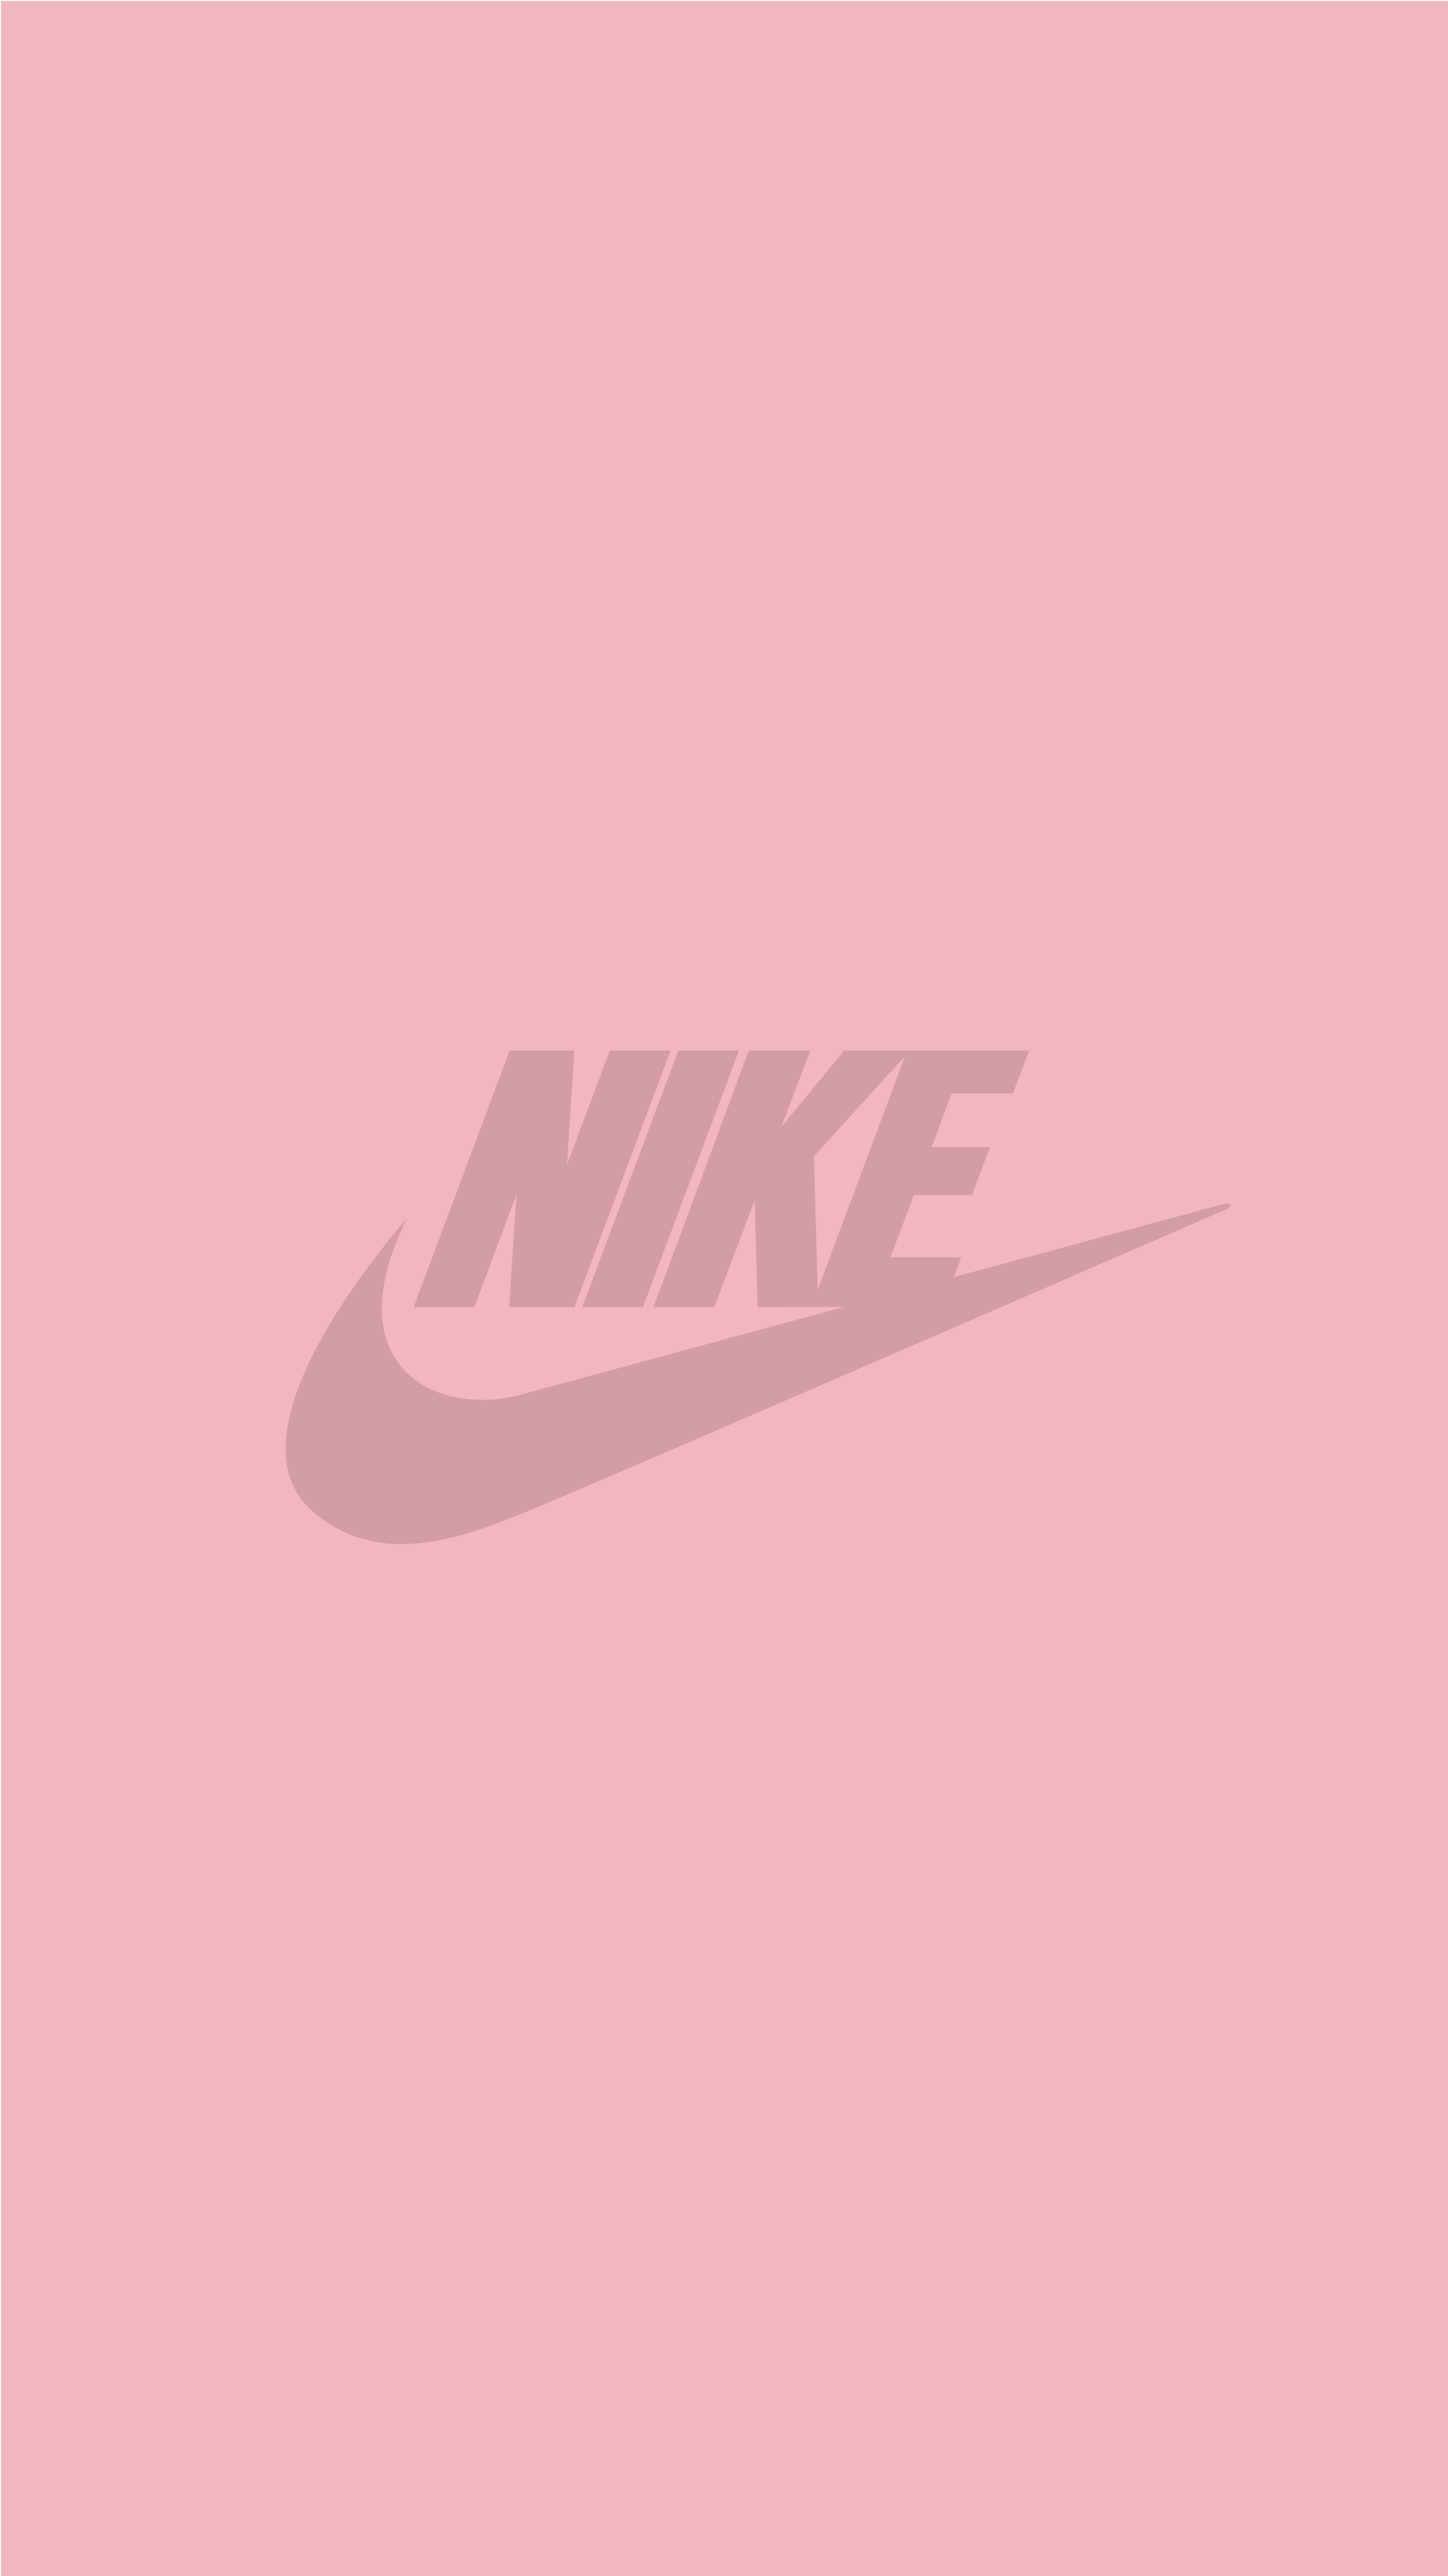 Nike wallpaper iPhone. Pink nike wallpaper, Pink wallpaper iphone, Nike wallpaper